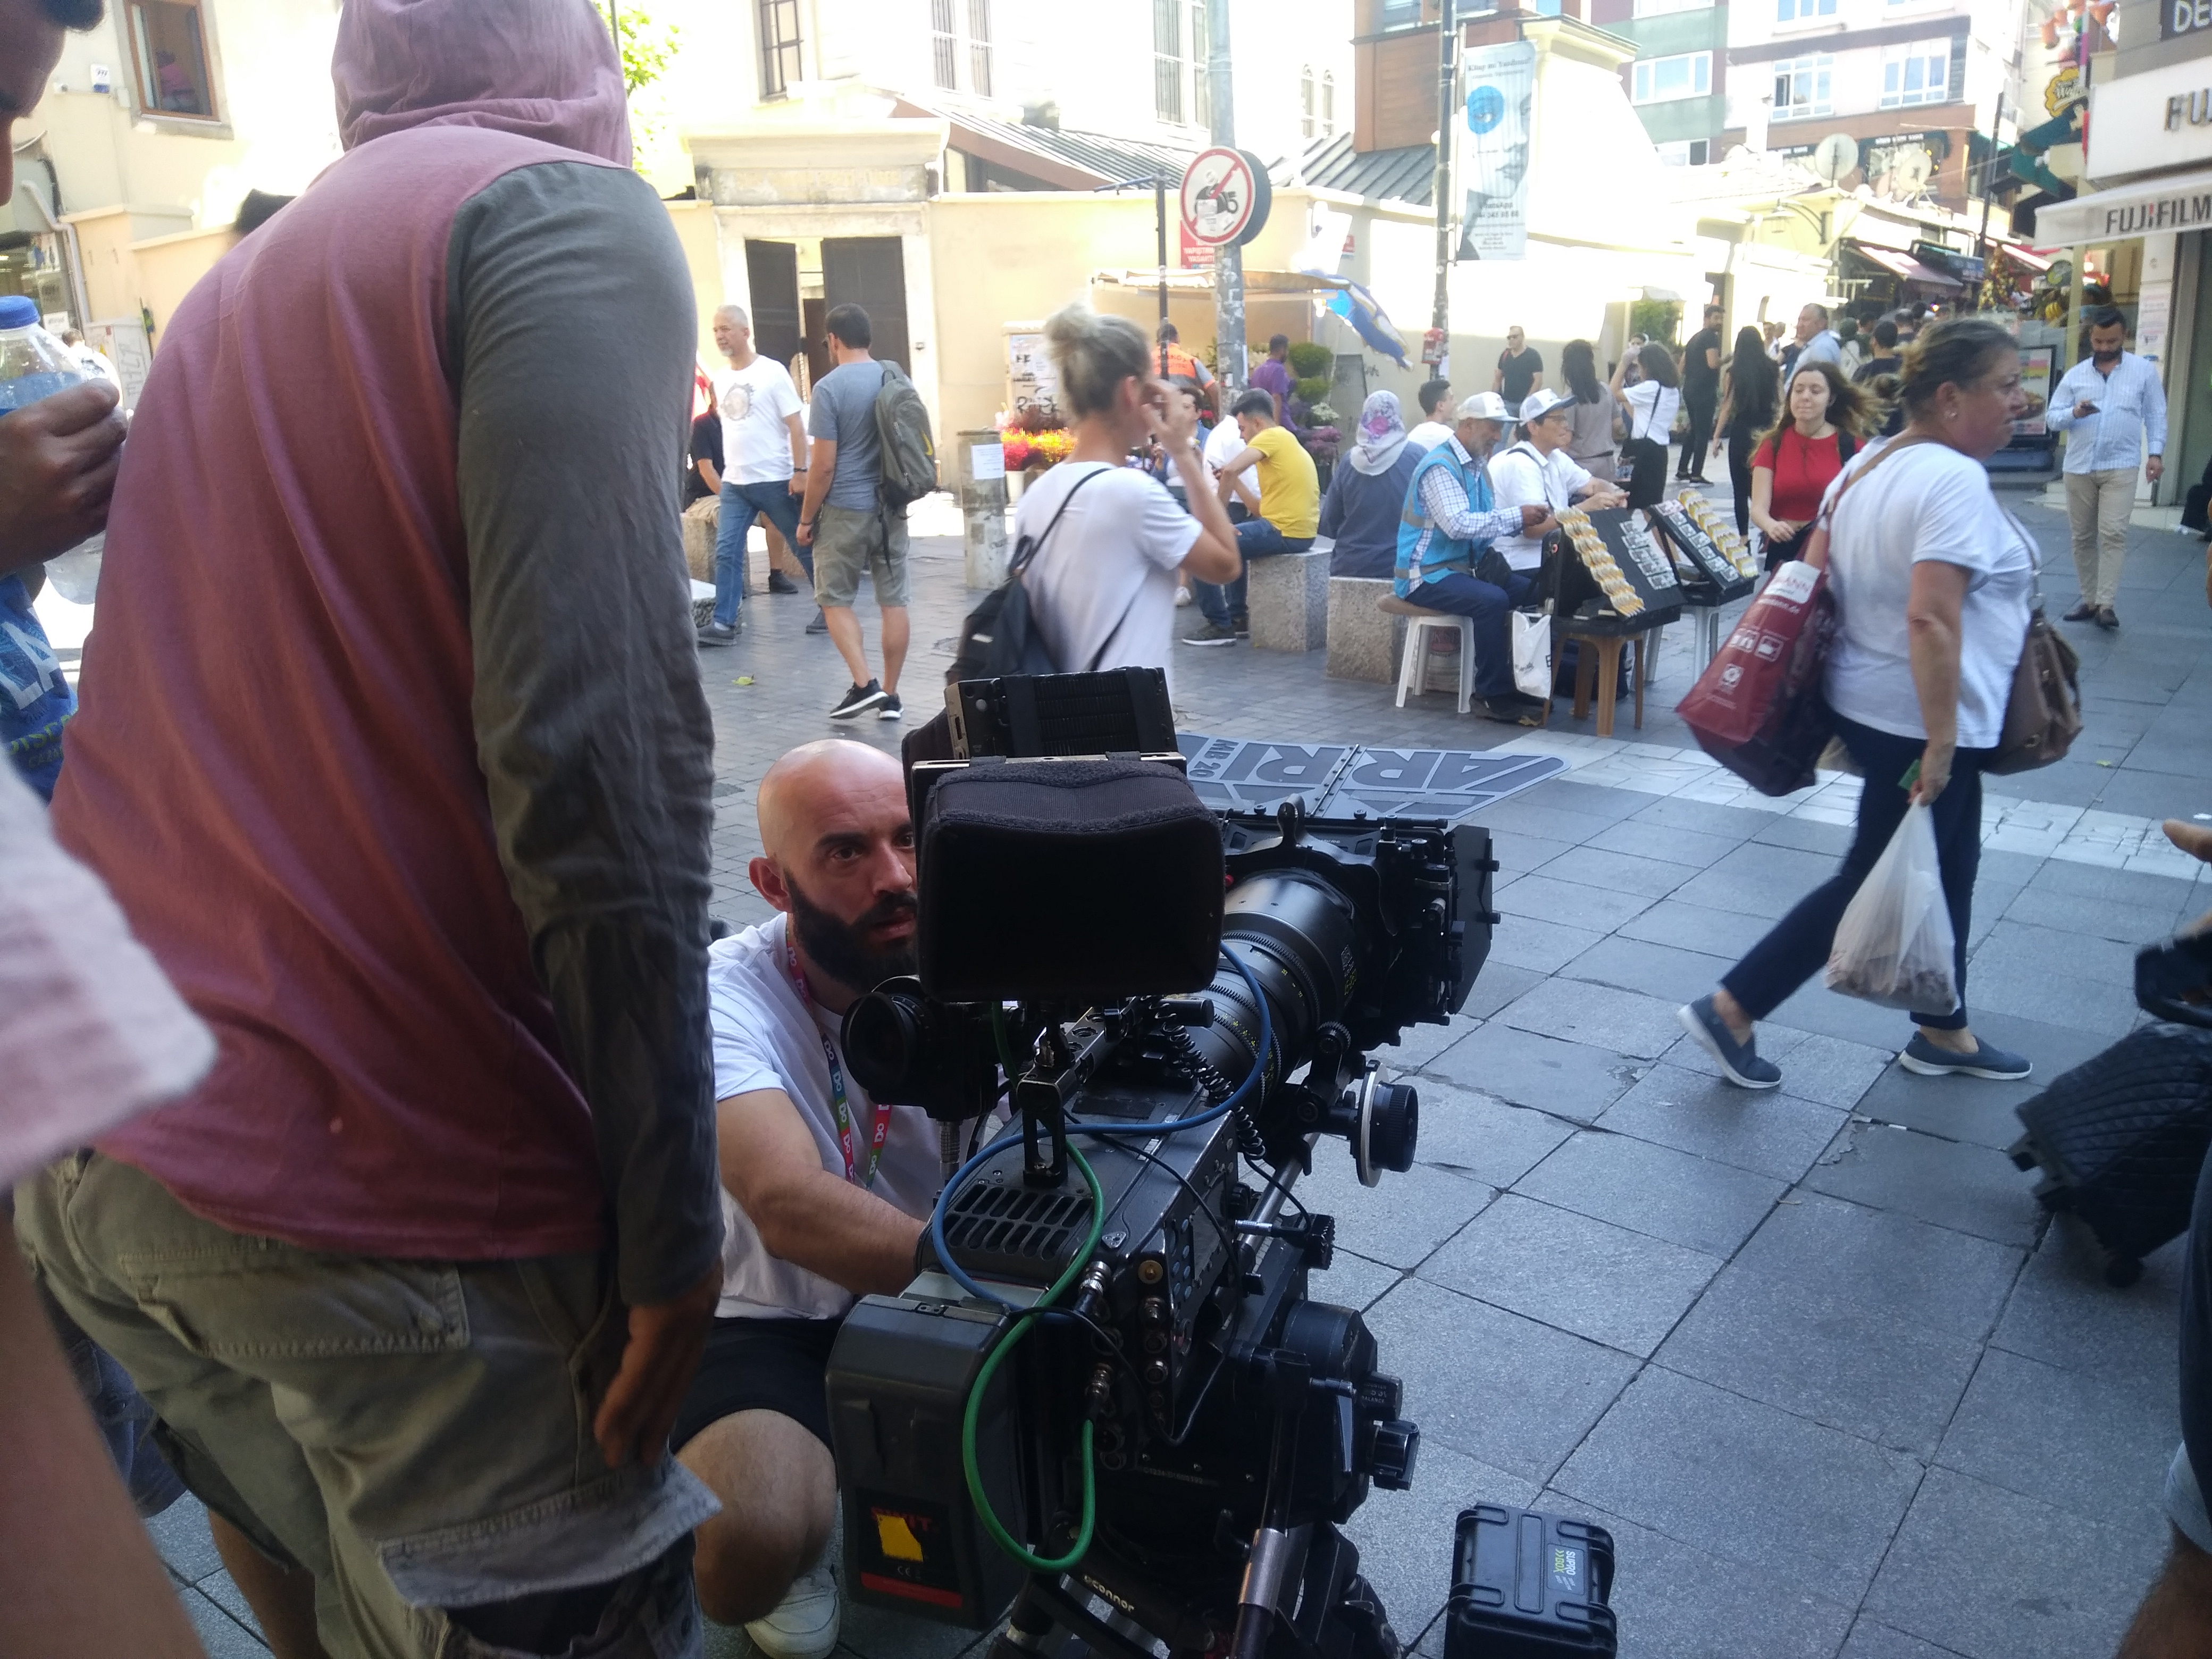 Kadıköy Tarihi Çarşı’da insan kalabılığı film çekimi oldu